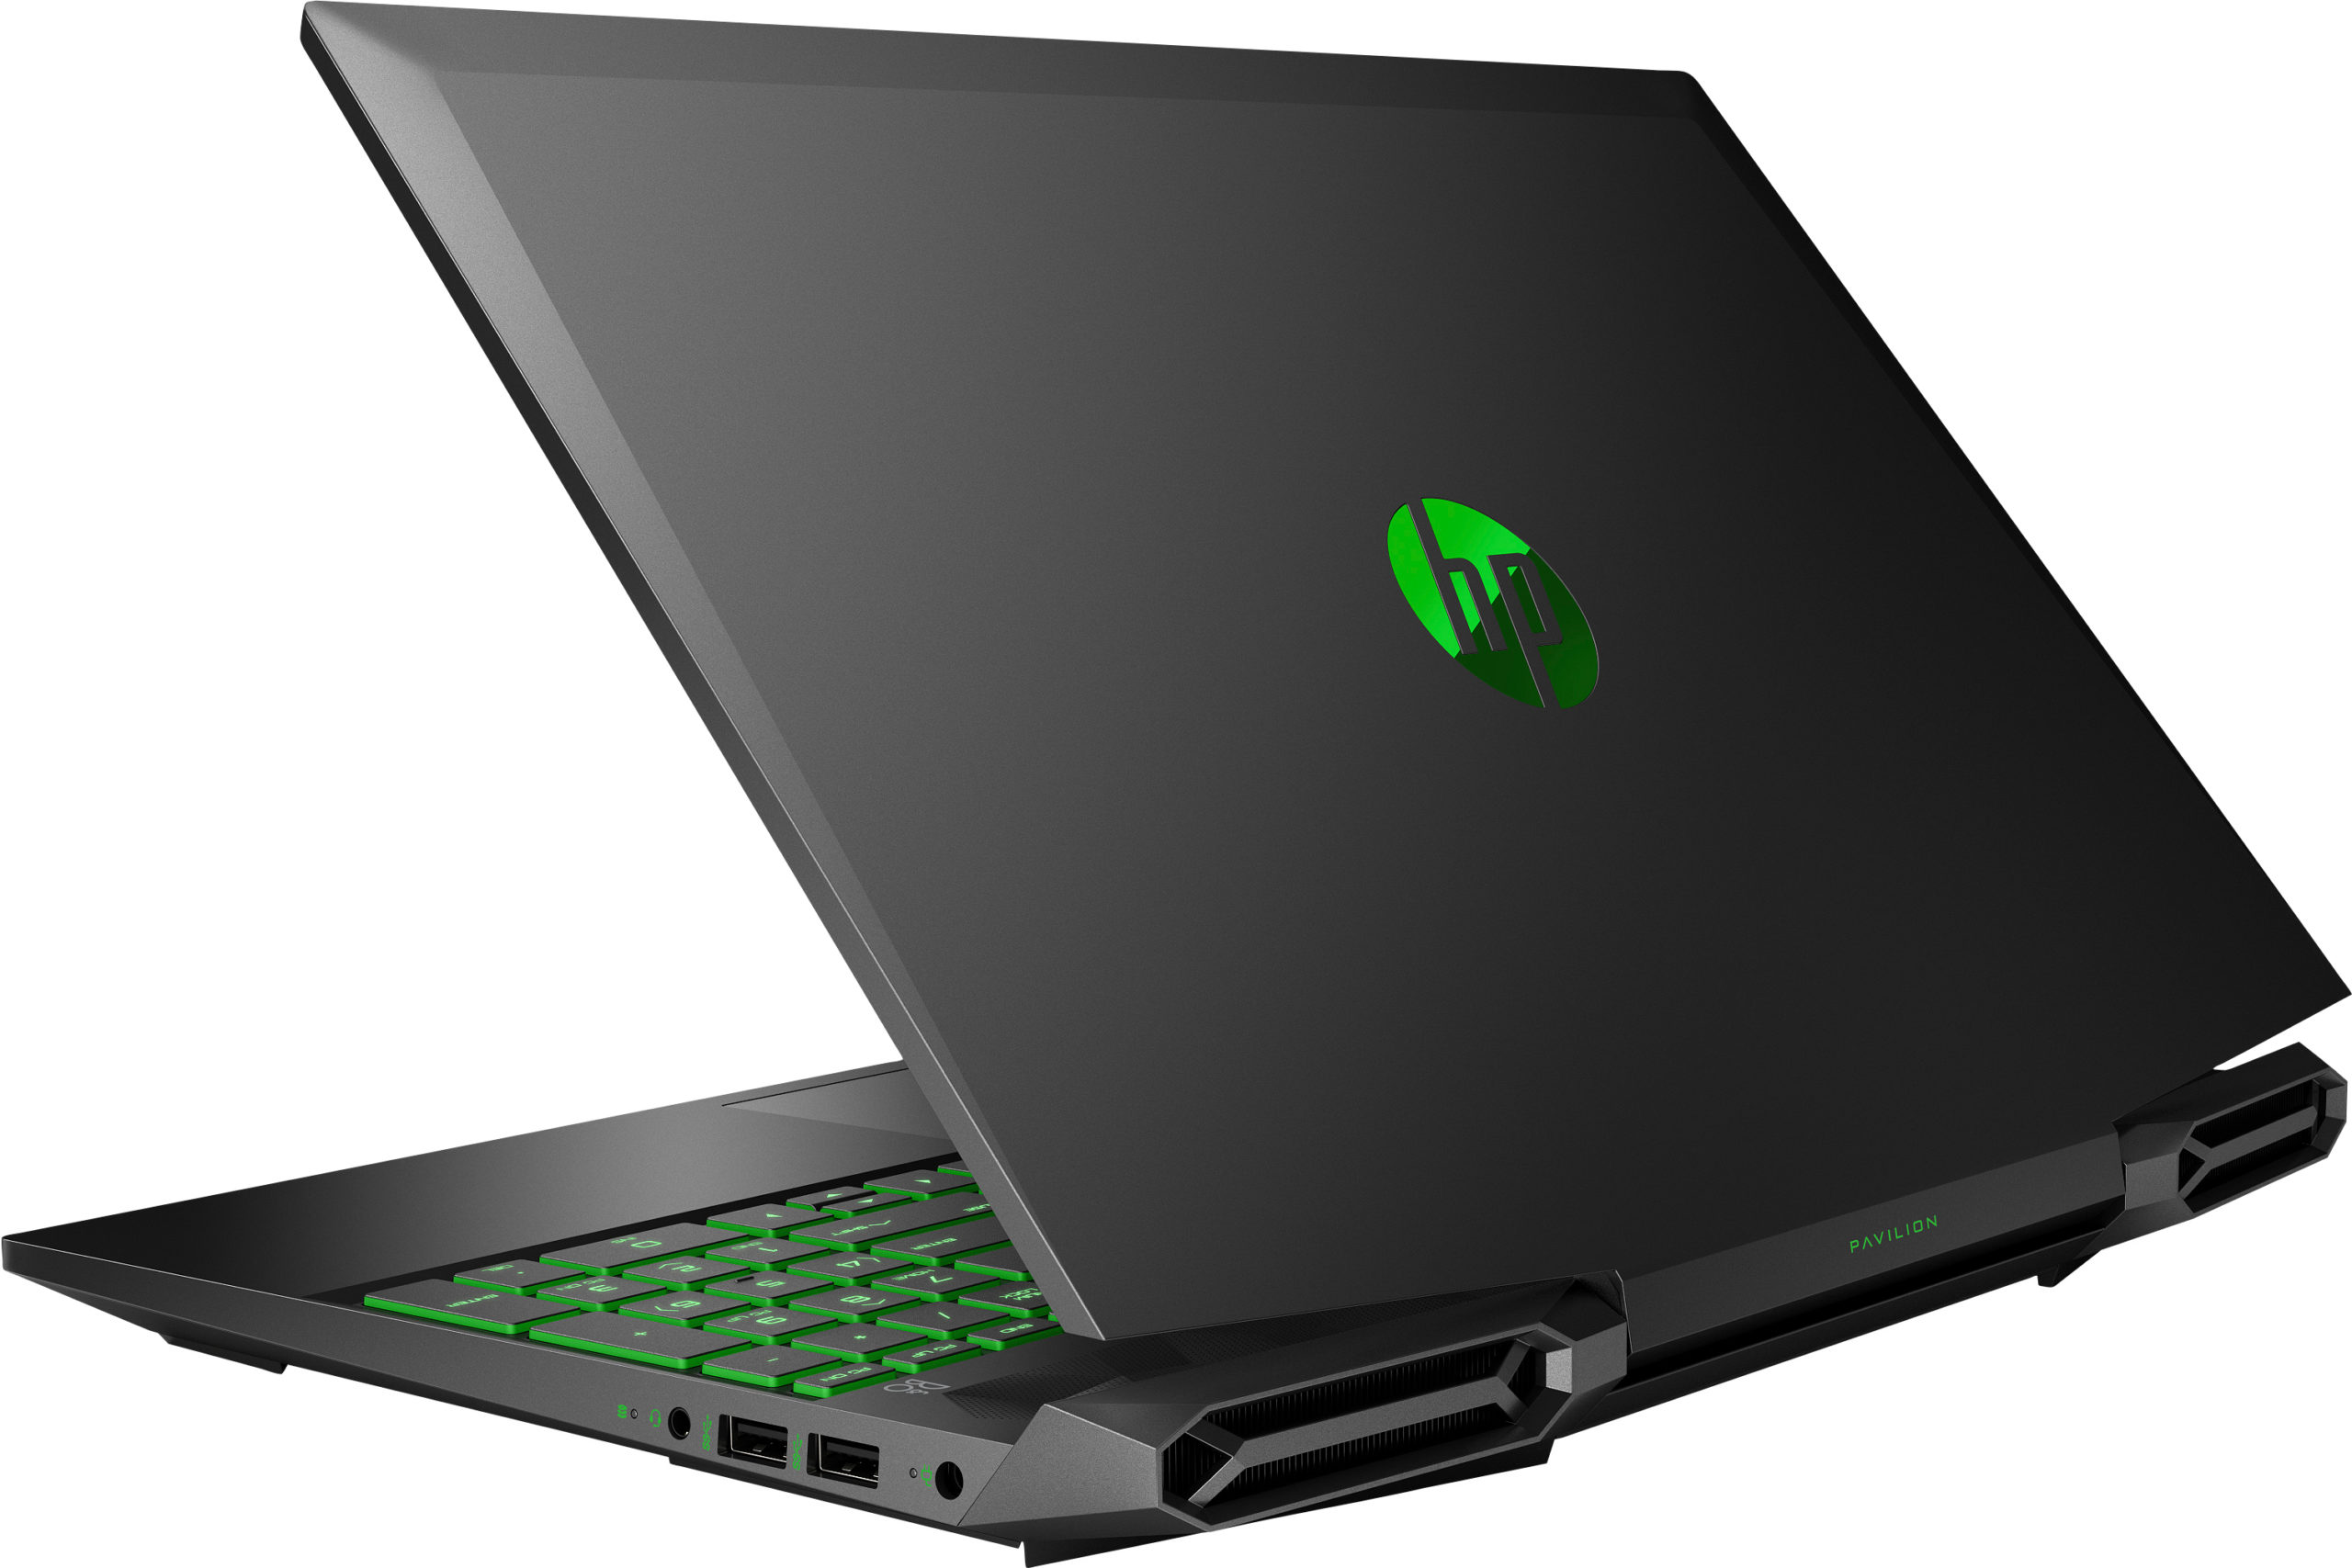  Rekomendasi Laptop Gaming Dibawah 10 Jutaan - Orbit.co.id